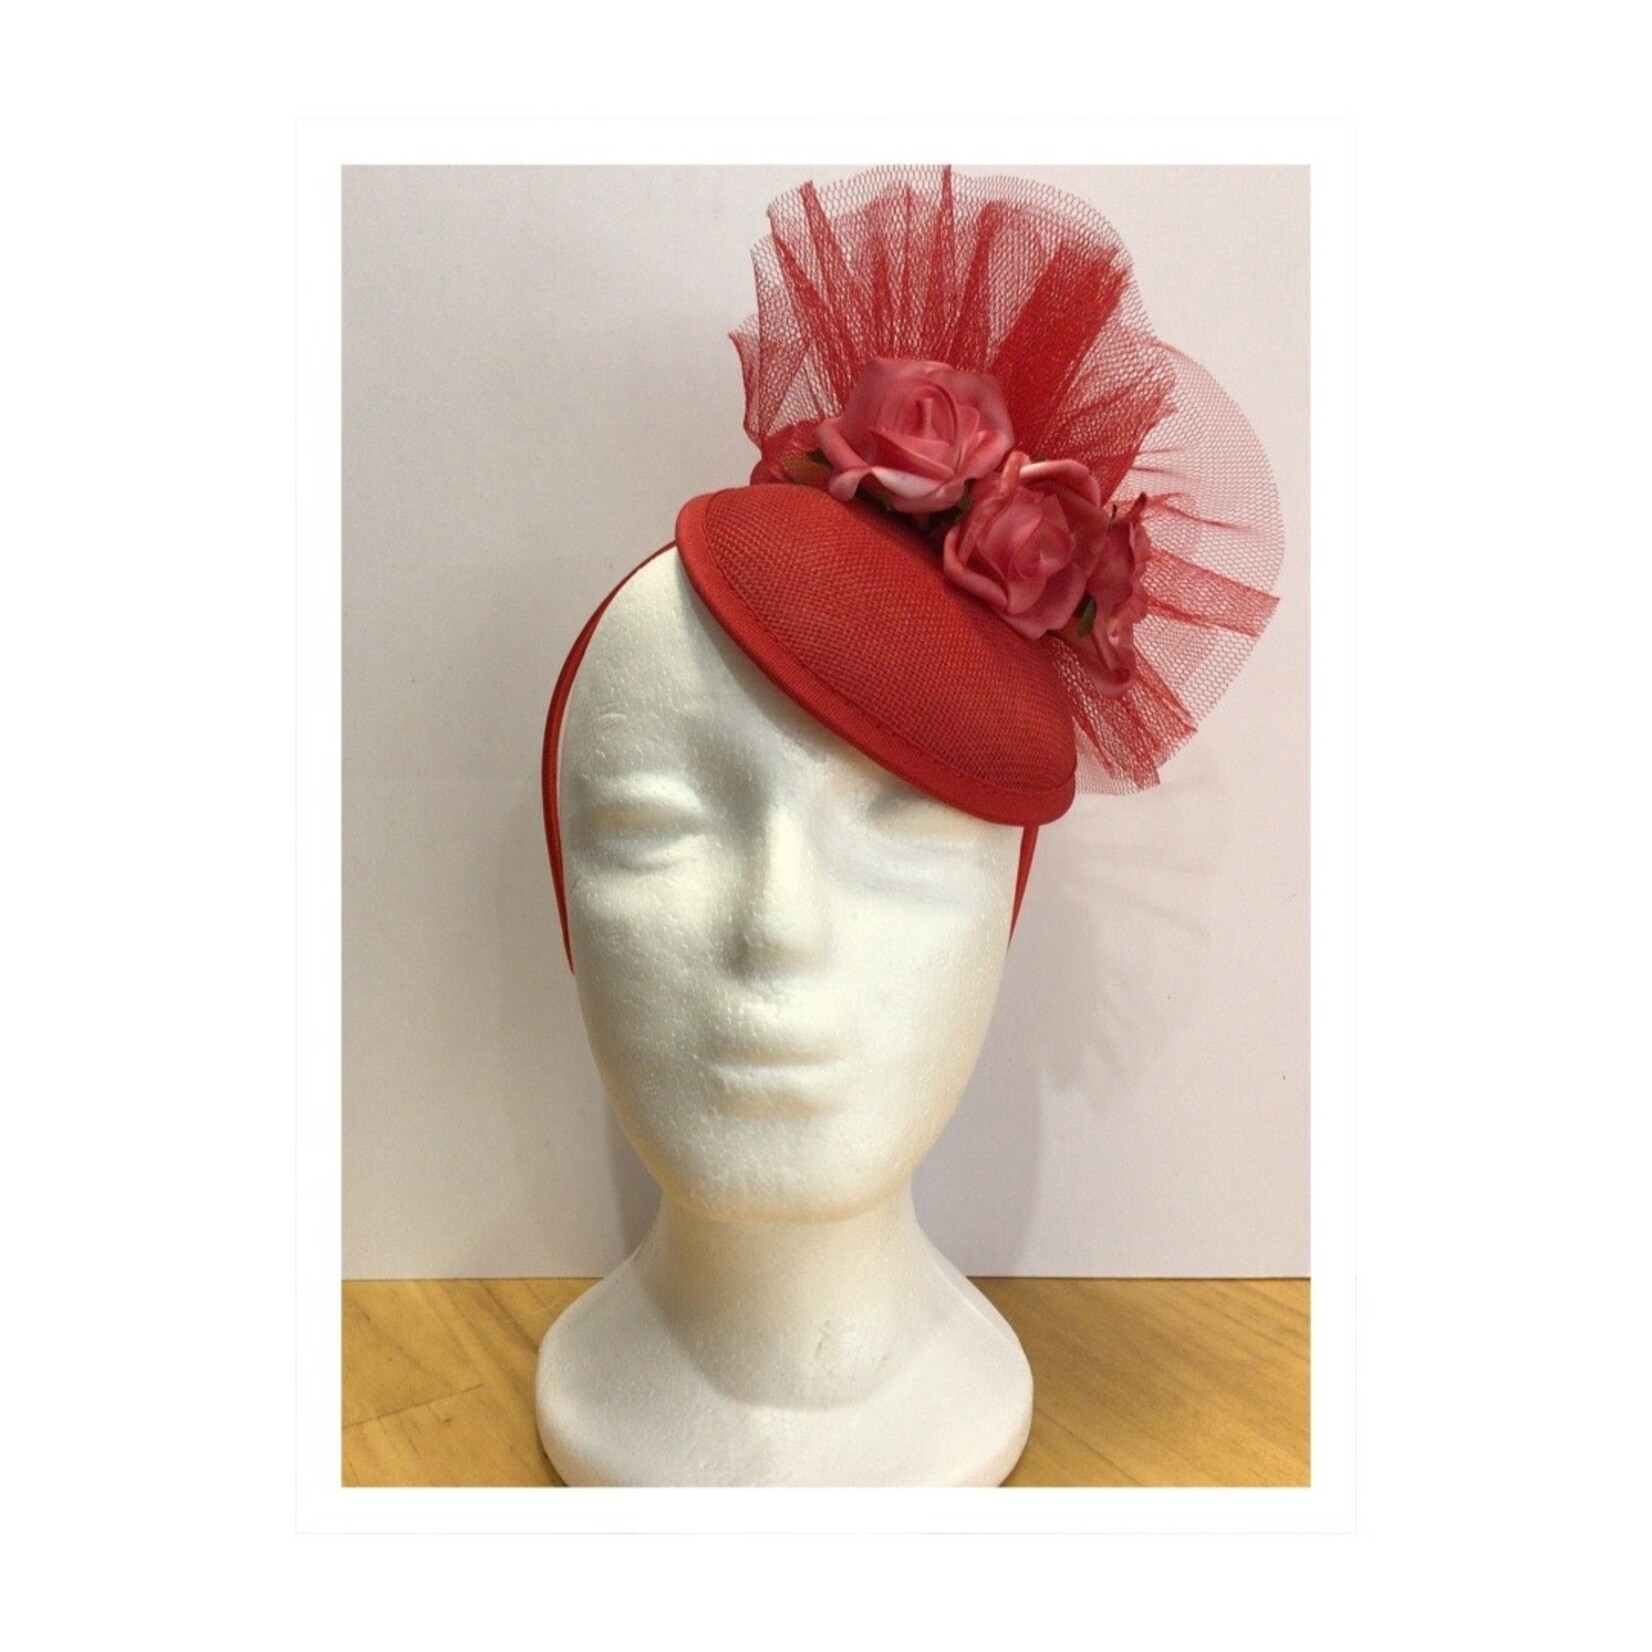 OPO Soft Red Rose Flower Hat Fascinator